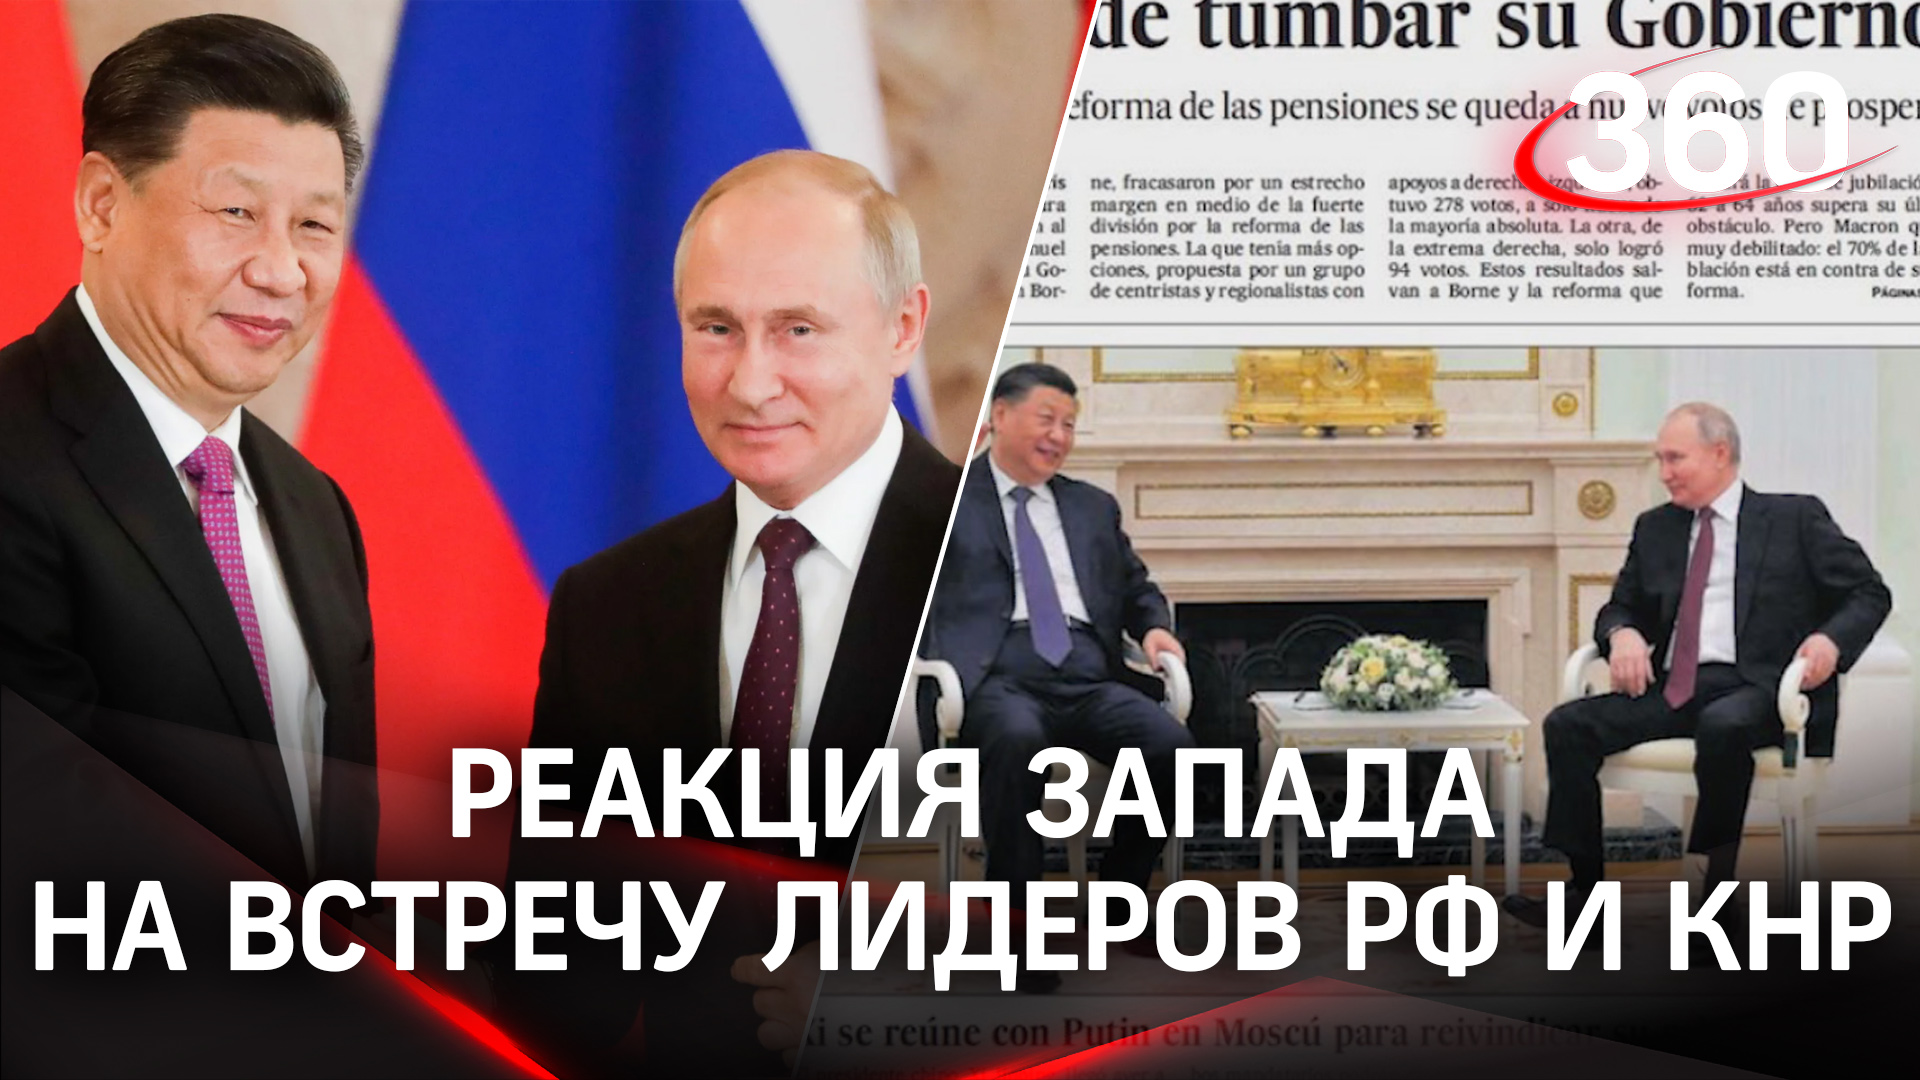 Путин и Си Цзиньпин на обложках мировых СМИ. Реакция Запада на встречу лидеров РФ и КНР в Москве